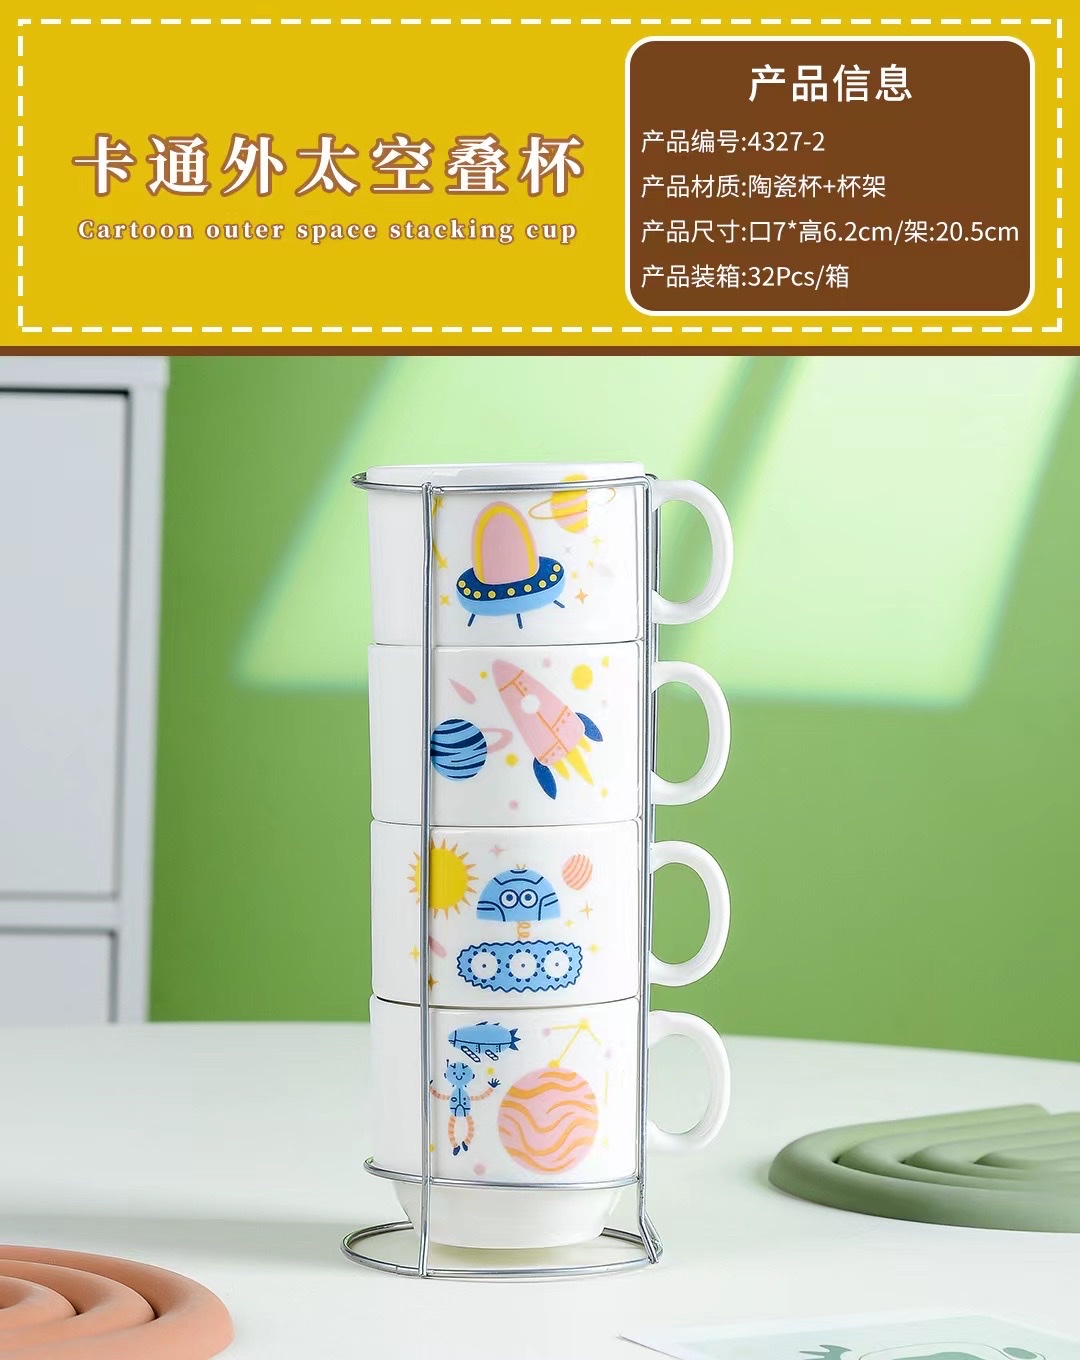 鹏艺801卡通创意简约大号陶瓷杯套装家用套杯叠叠杯茶具咖啡杯水杯送铁架